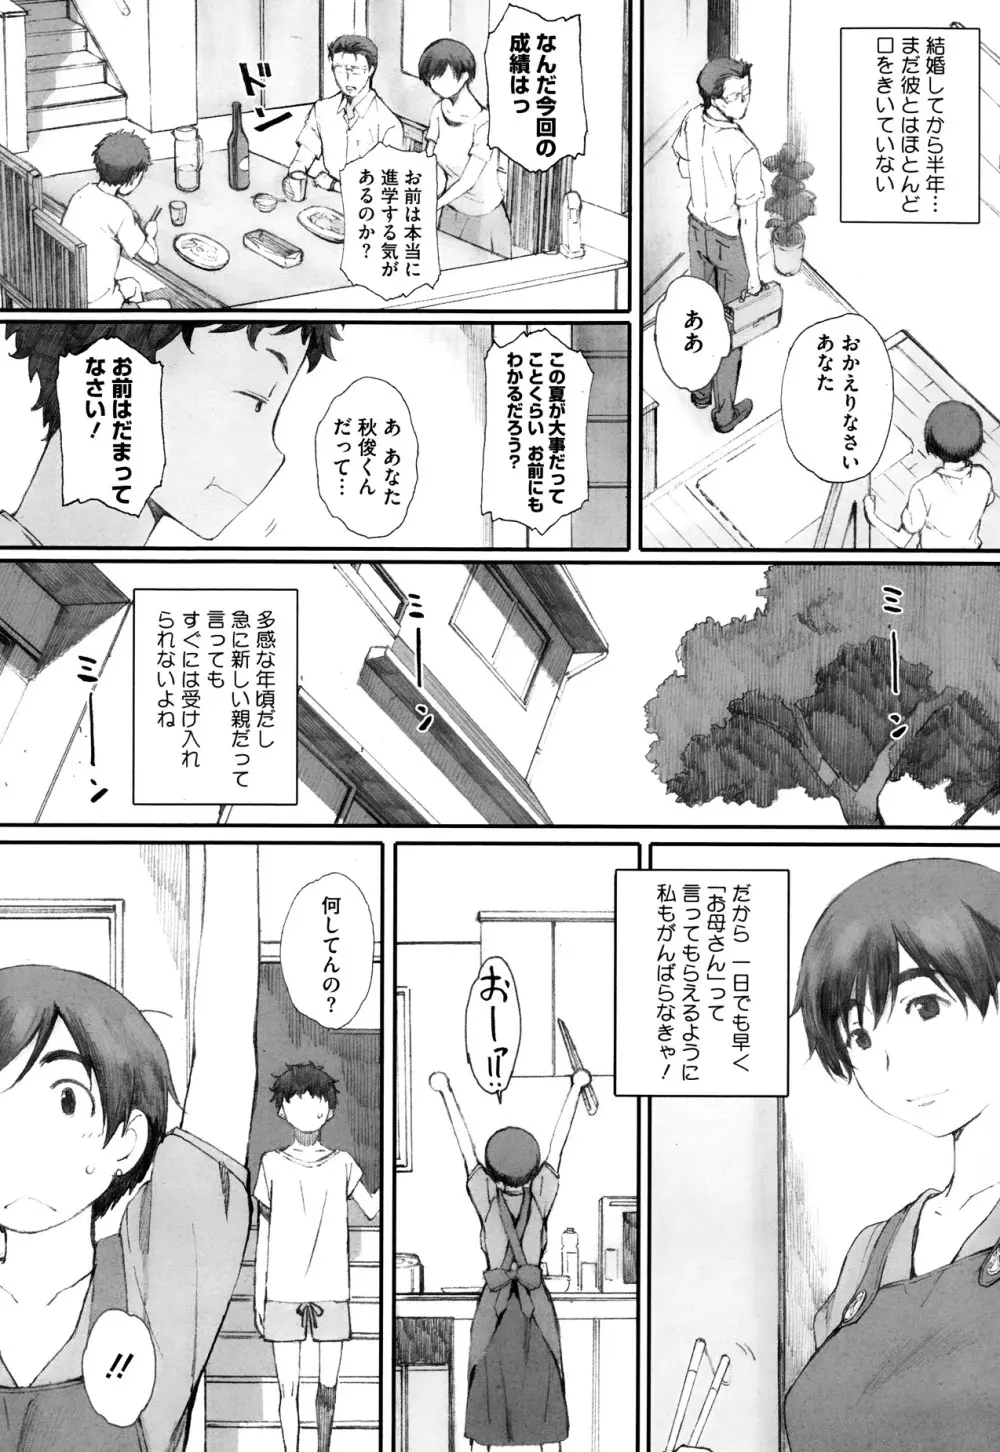 Kamakiri no su Ch.01-02 2ページ